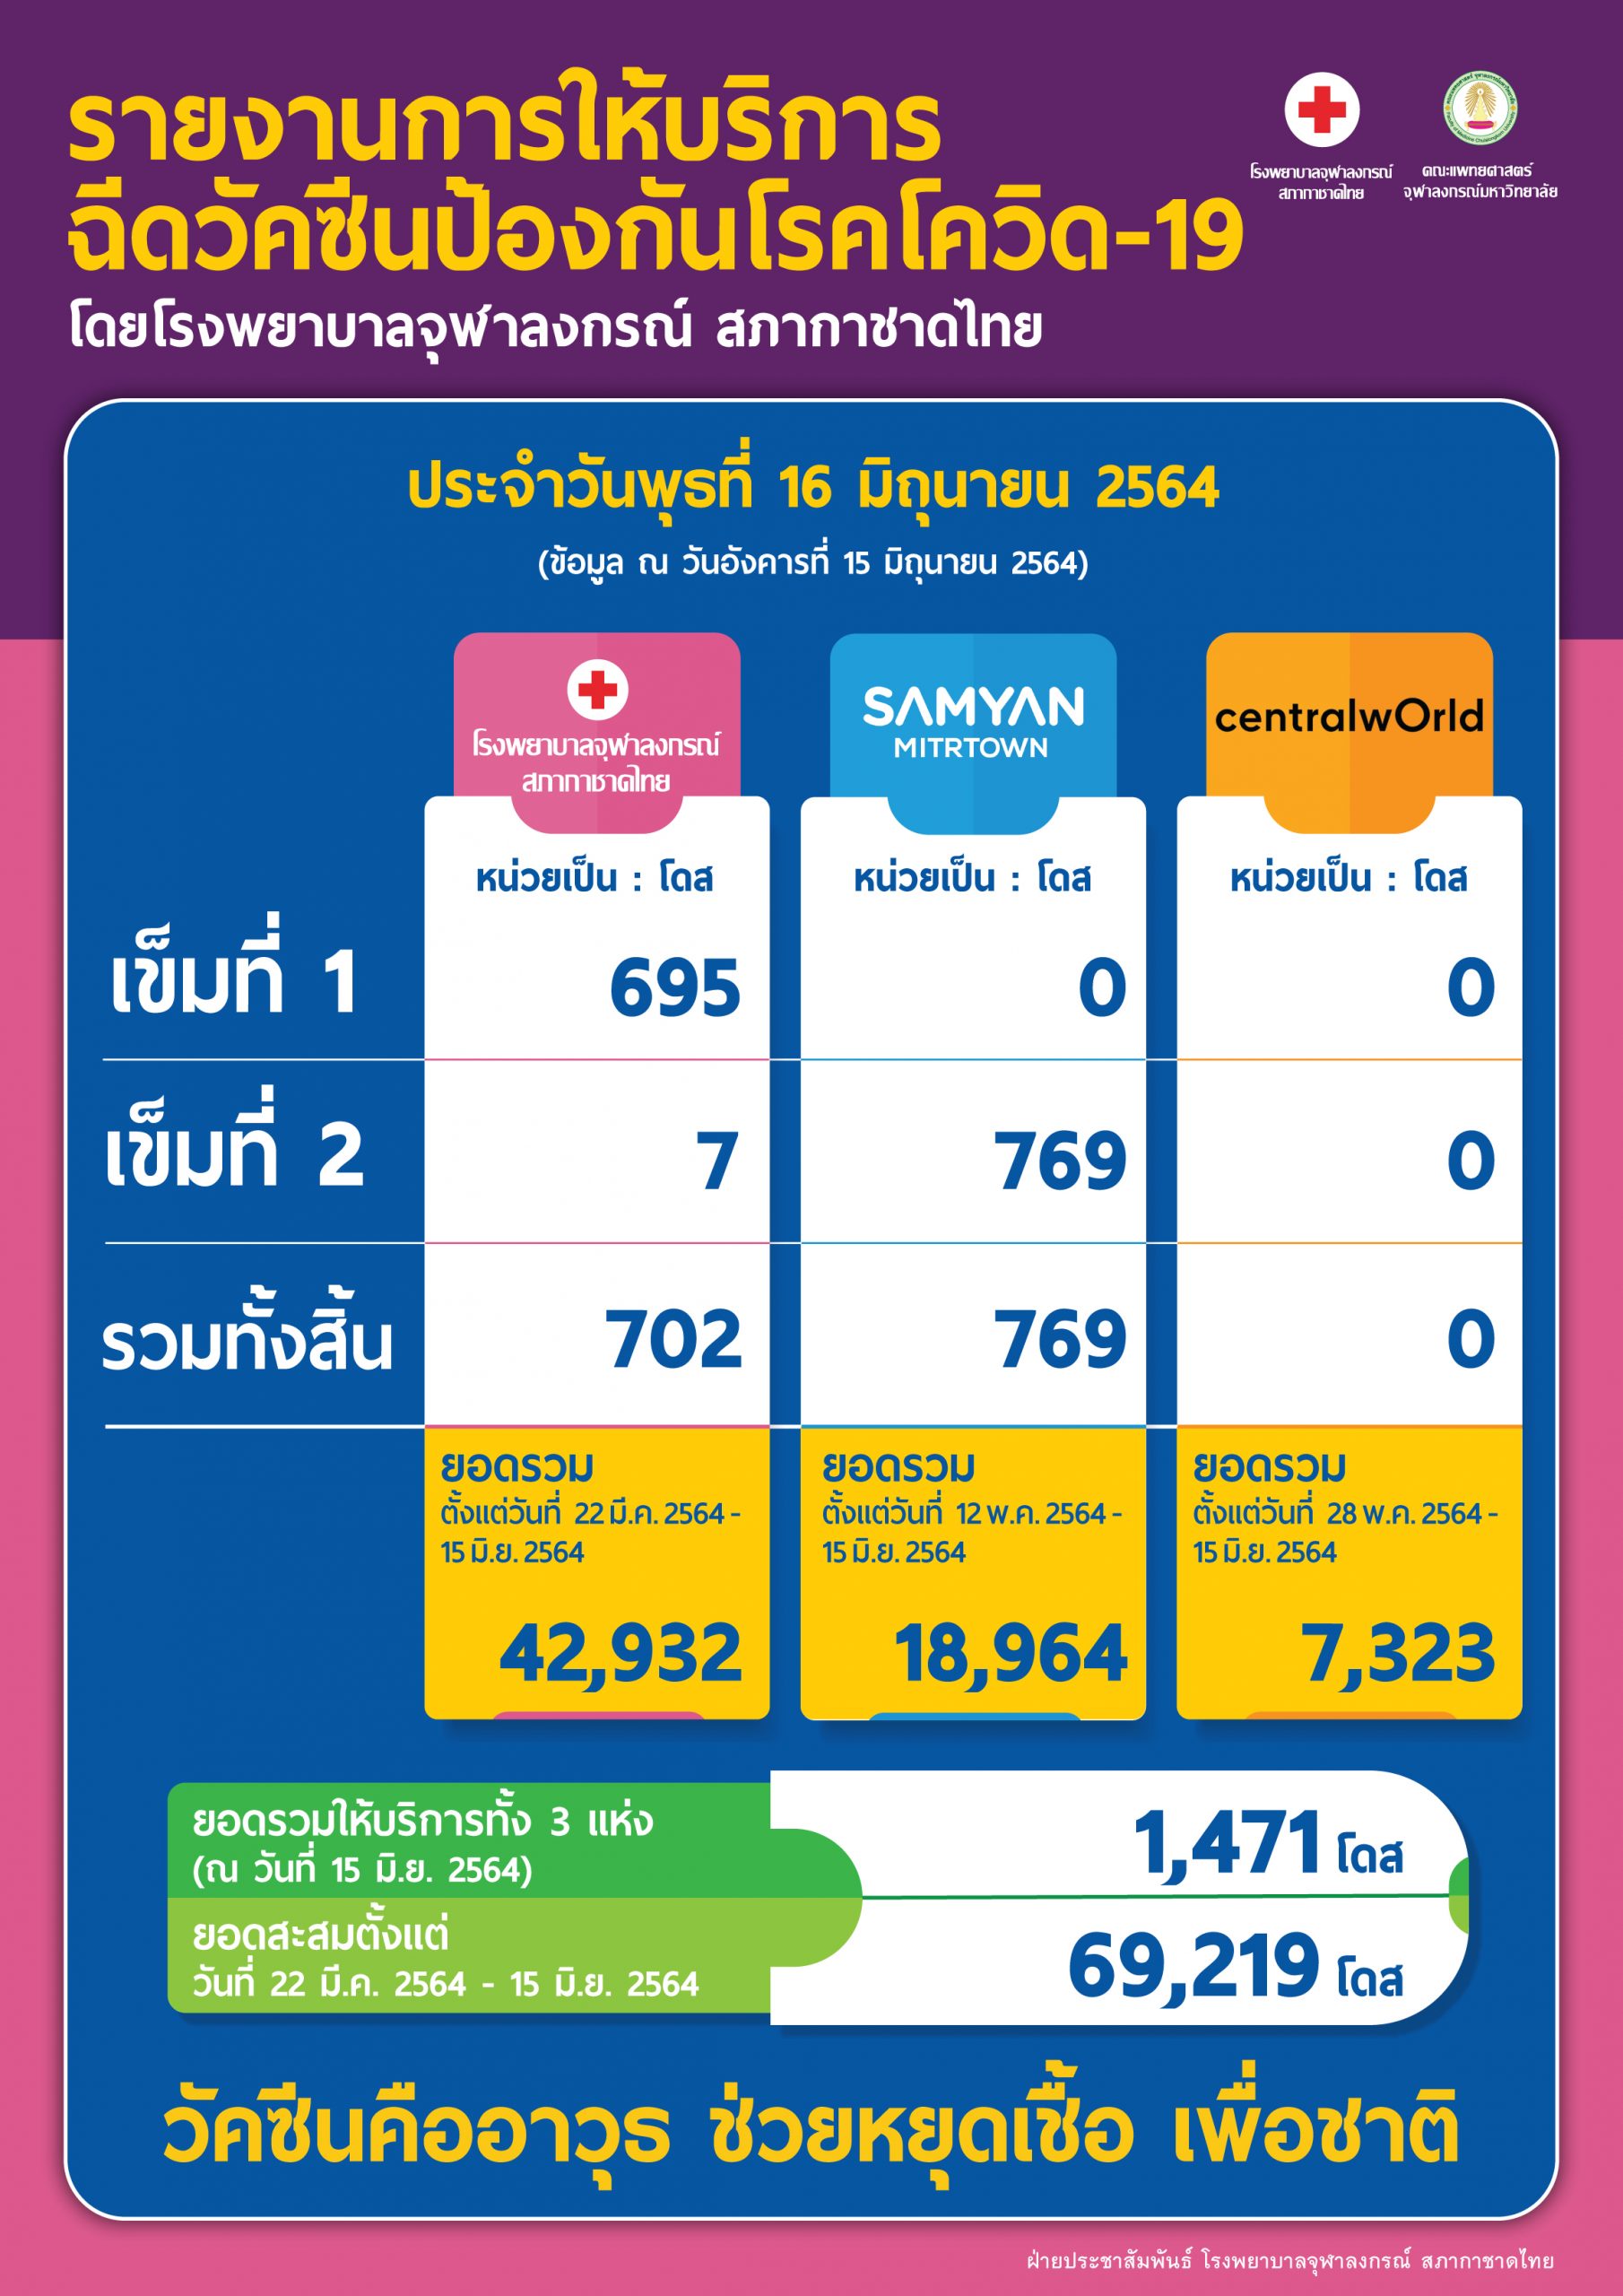 รายงานการให้บริการฉีดวัคซีนป้องกันโรคโควิด-19 โดยโรงพยาบาลจุฬาลงกรณ์ สภากาชาดไทย ประจำวันพุธที่ 16 มิถุนายน 2564